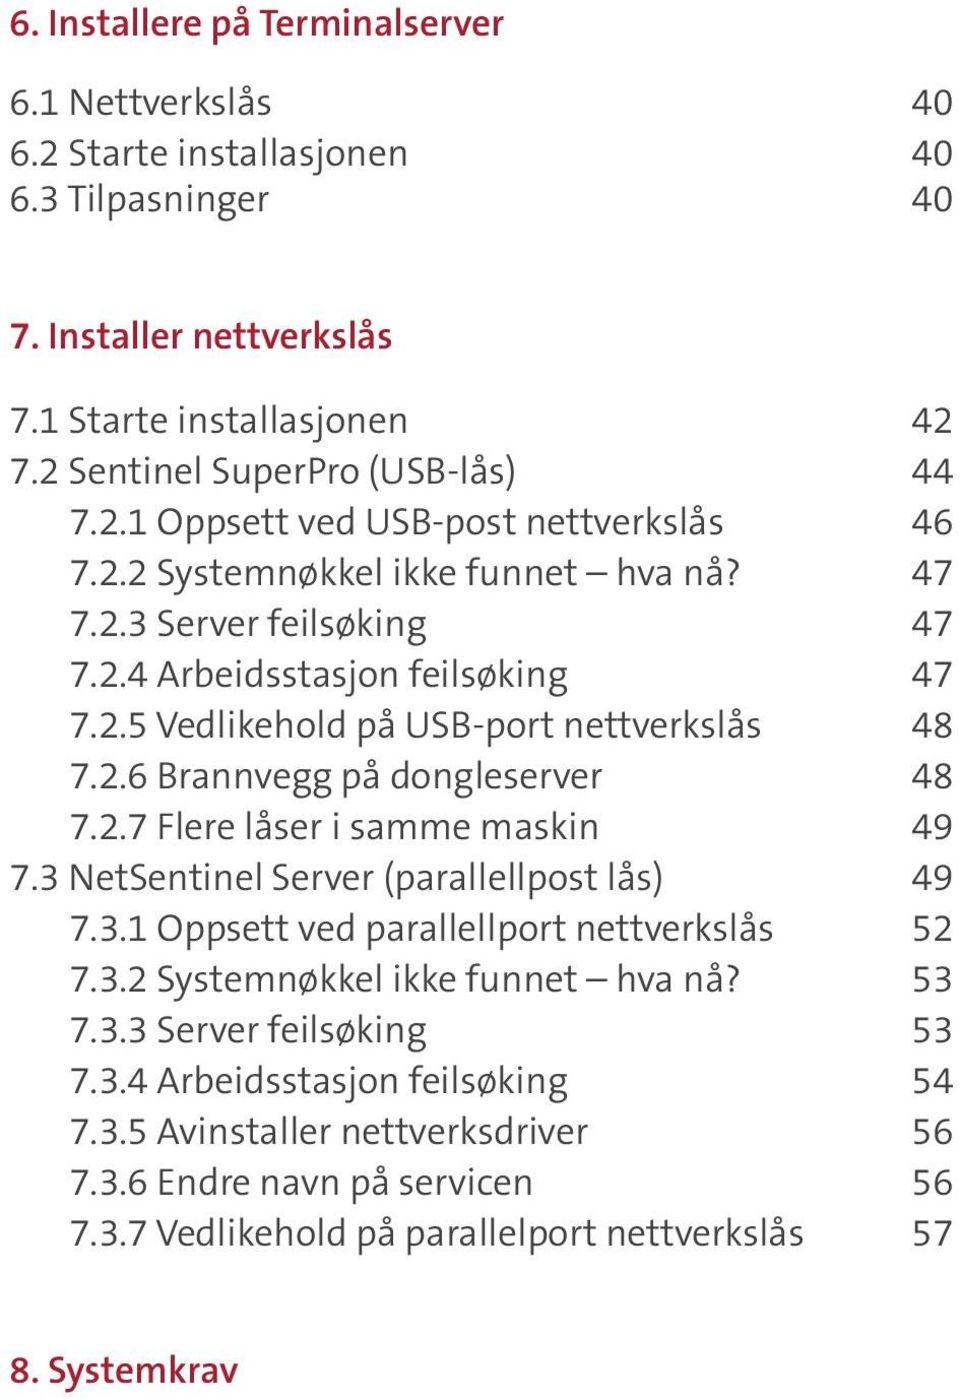 3 NetSentinel Server (parallellpost lås) 49 7.3.1 Oppsett ved parallellport nettverkslås 52 7.3.2 Systemnøkkel ikke funnet hva nå? 53 7.3.3 Server feilsøking 53 7.3.4 Arbeidsstasjon feilsøking 54 7.